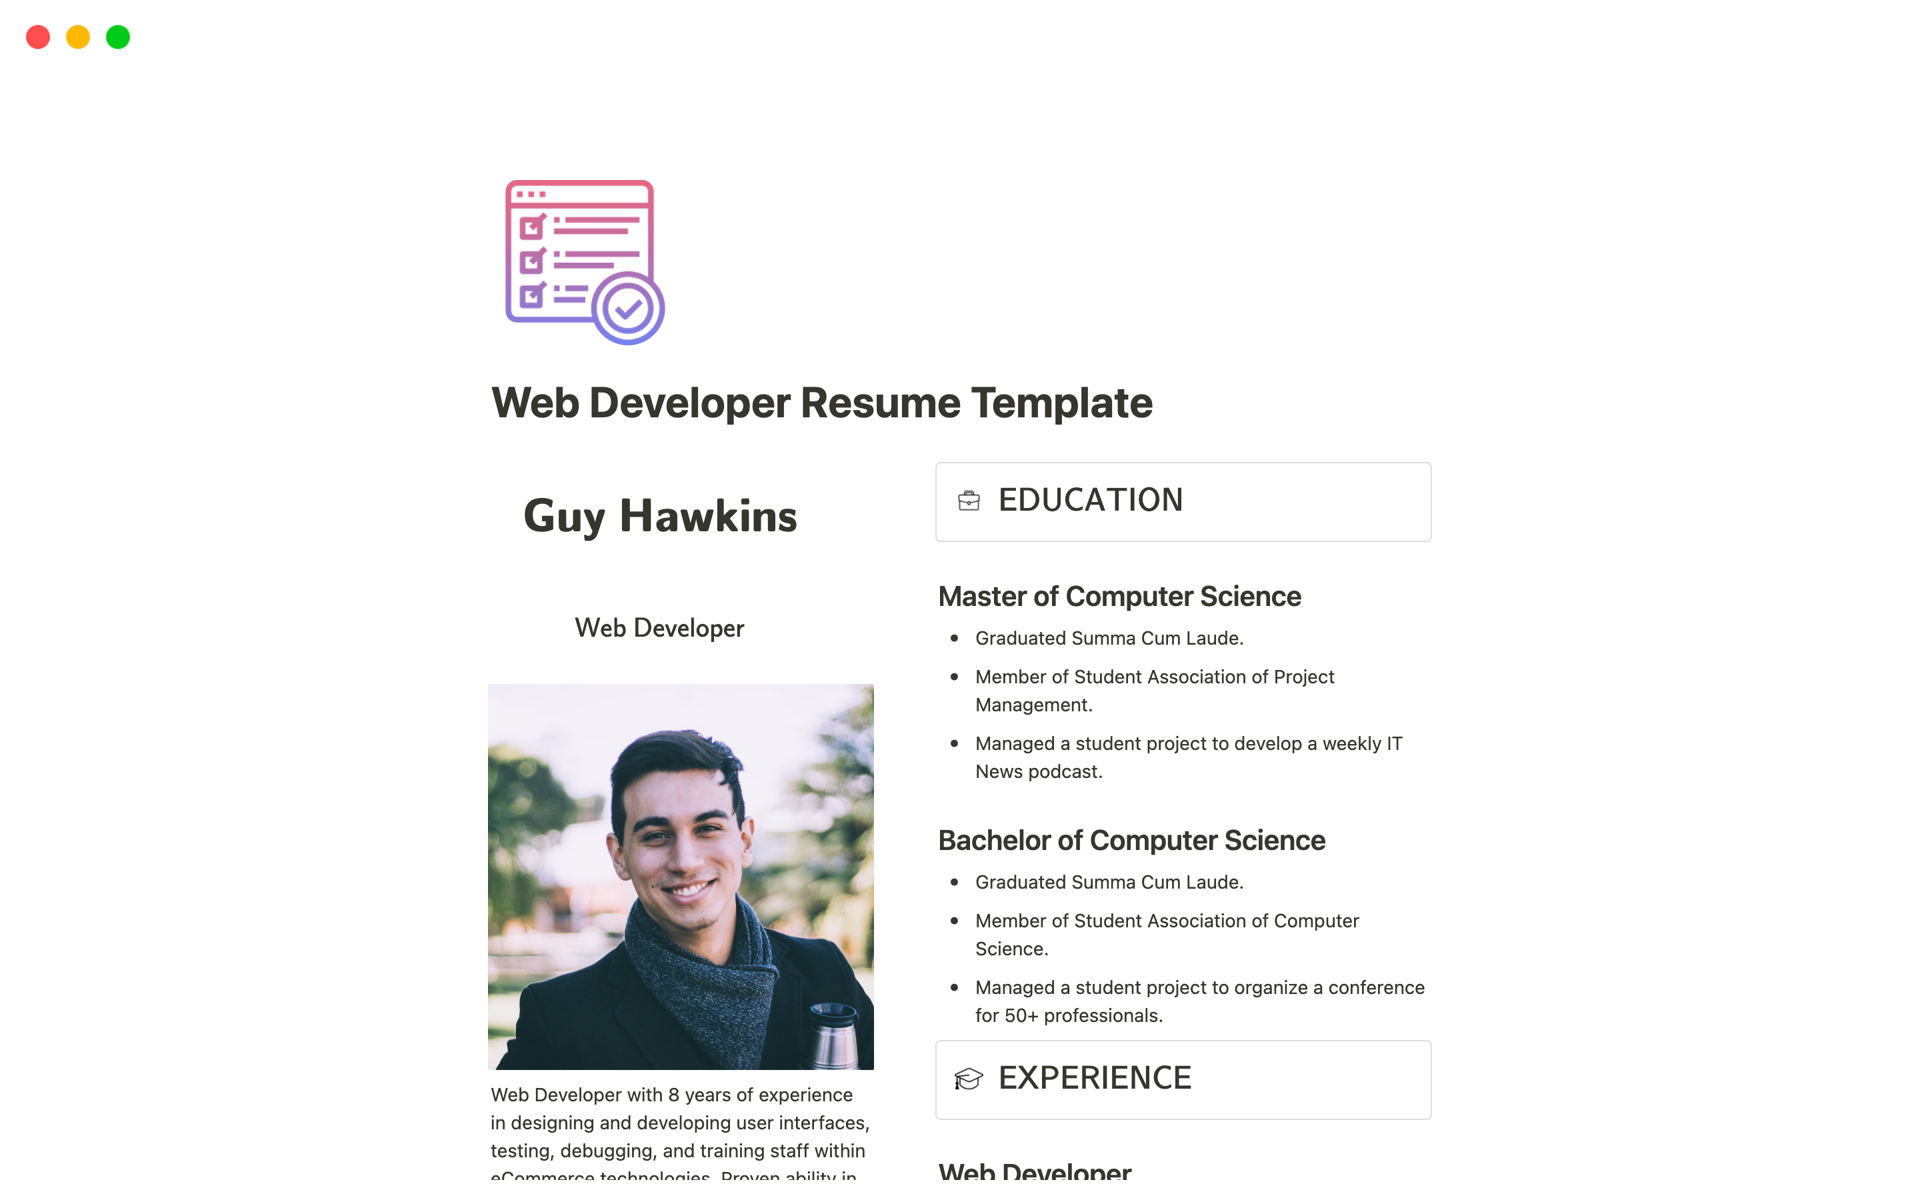 Web Developer Resume님의 템플릿 미리보기